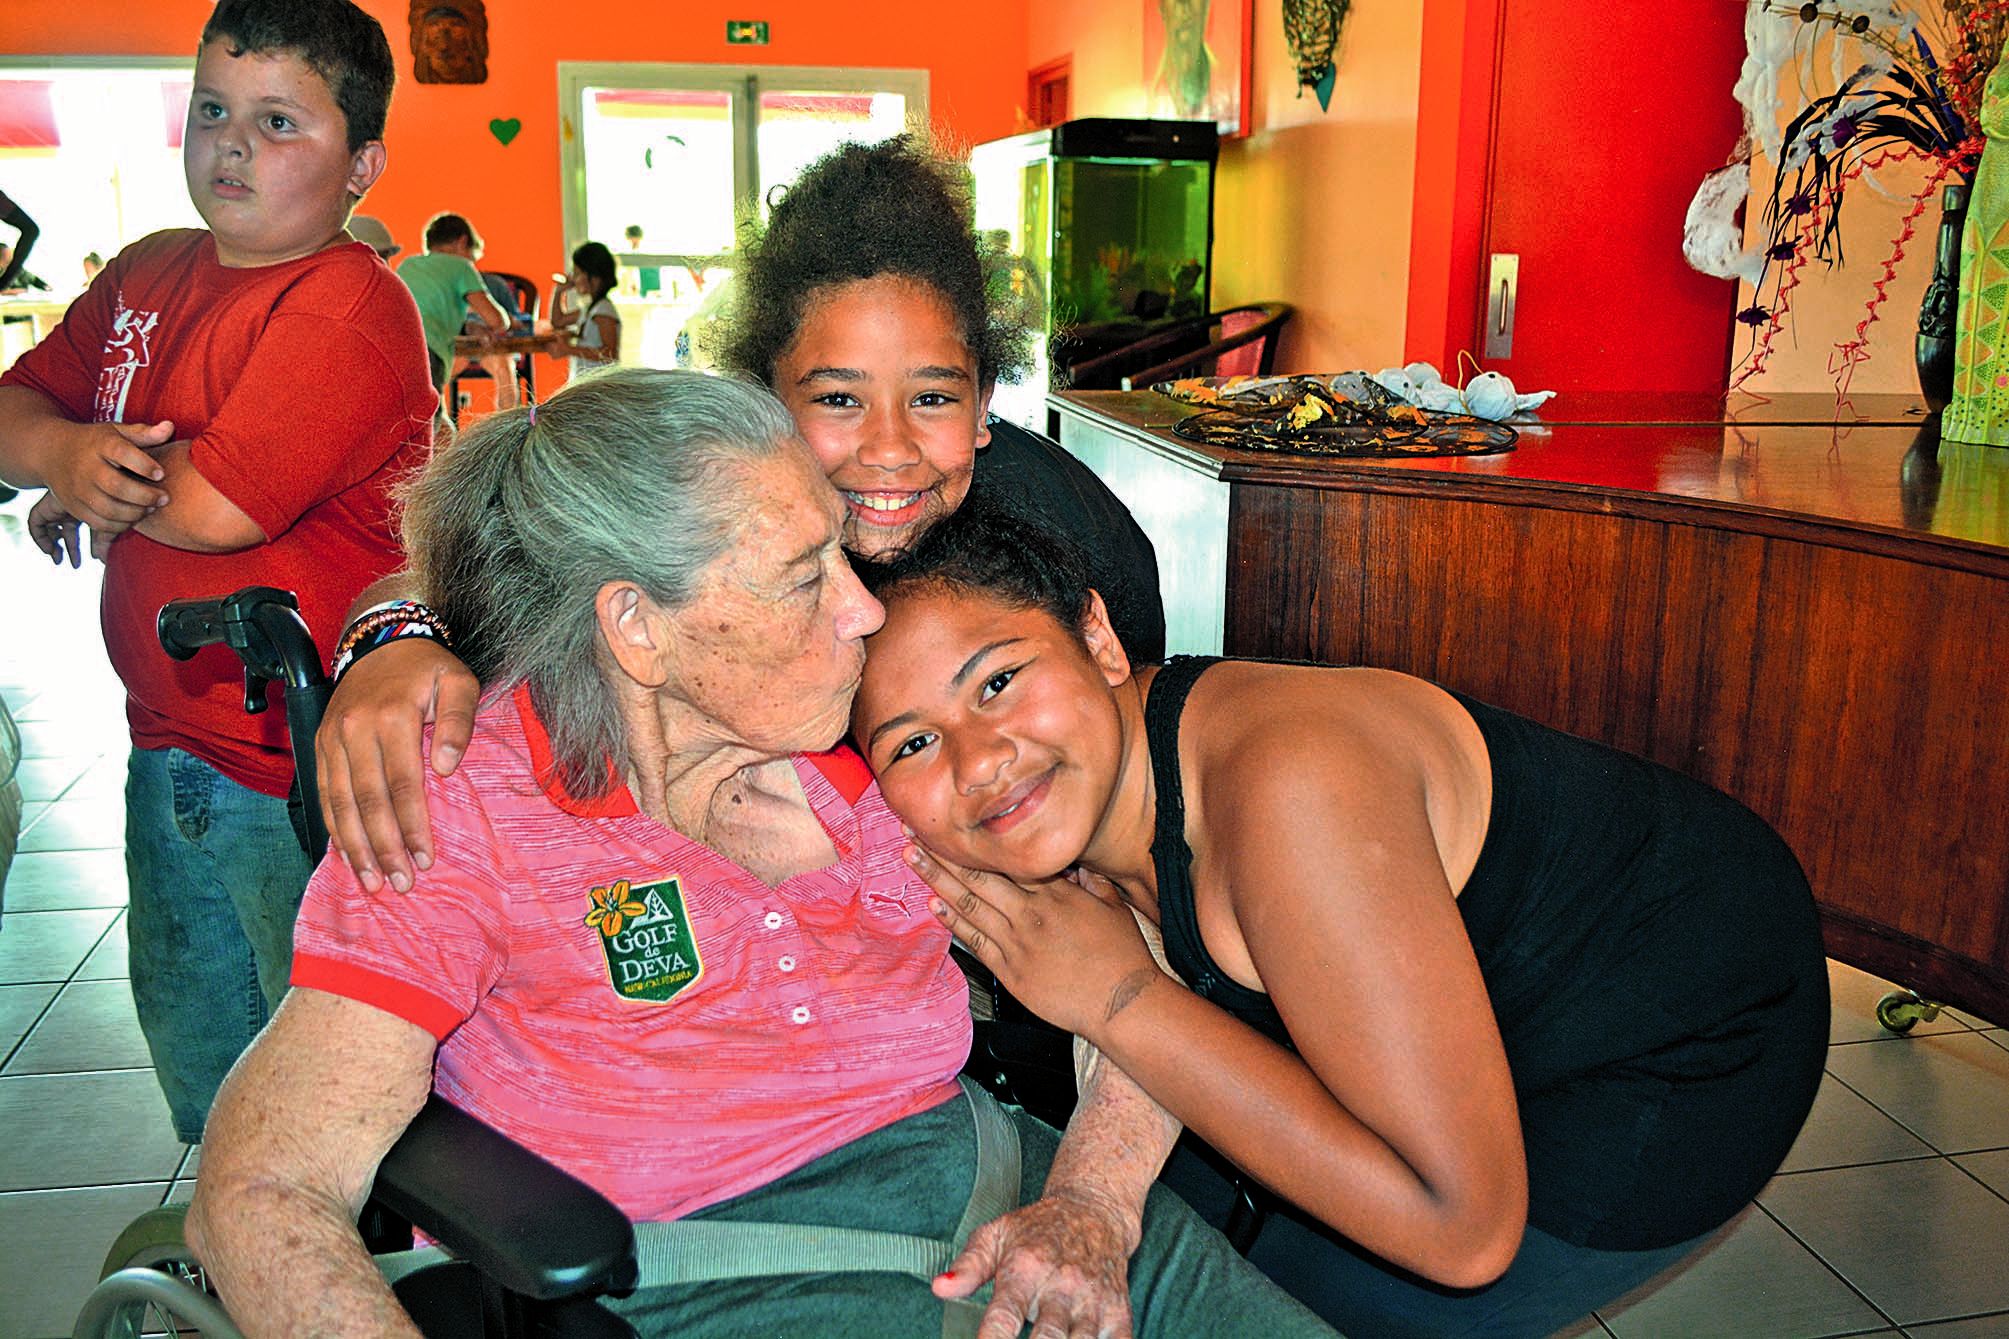 Tékéa (à droite) et Loane ont donné beaucoup de câlins aux seniors. « J’ai beaucoup d’affection pour les personnes âgées. J’aime bien m’occuper d’elles », a indiqué Tékéa. Sa copine n’en pense pas moins : « Quand je les vois, je suis un peu triste, car c’